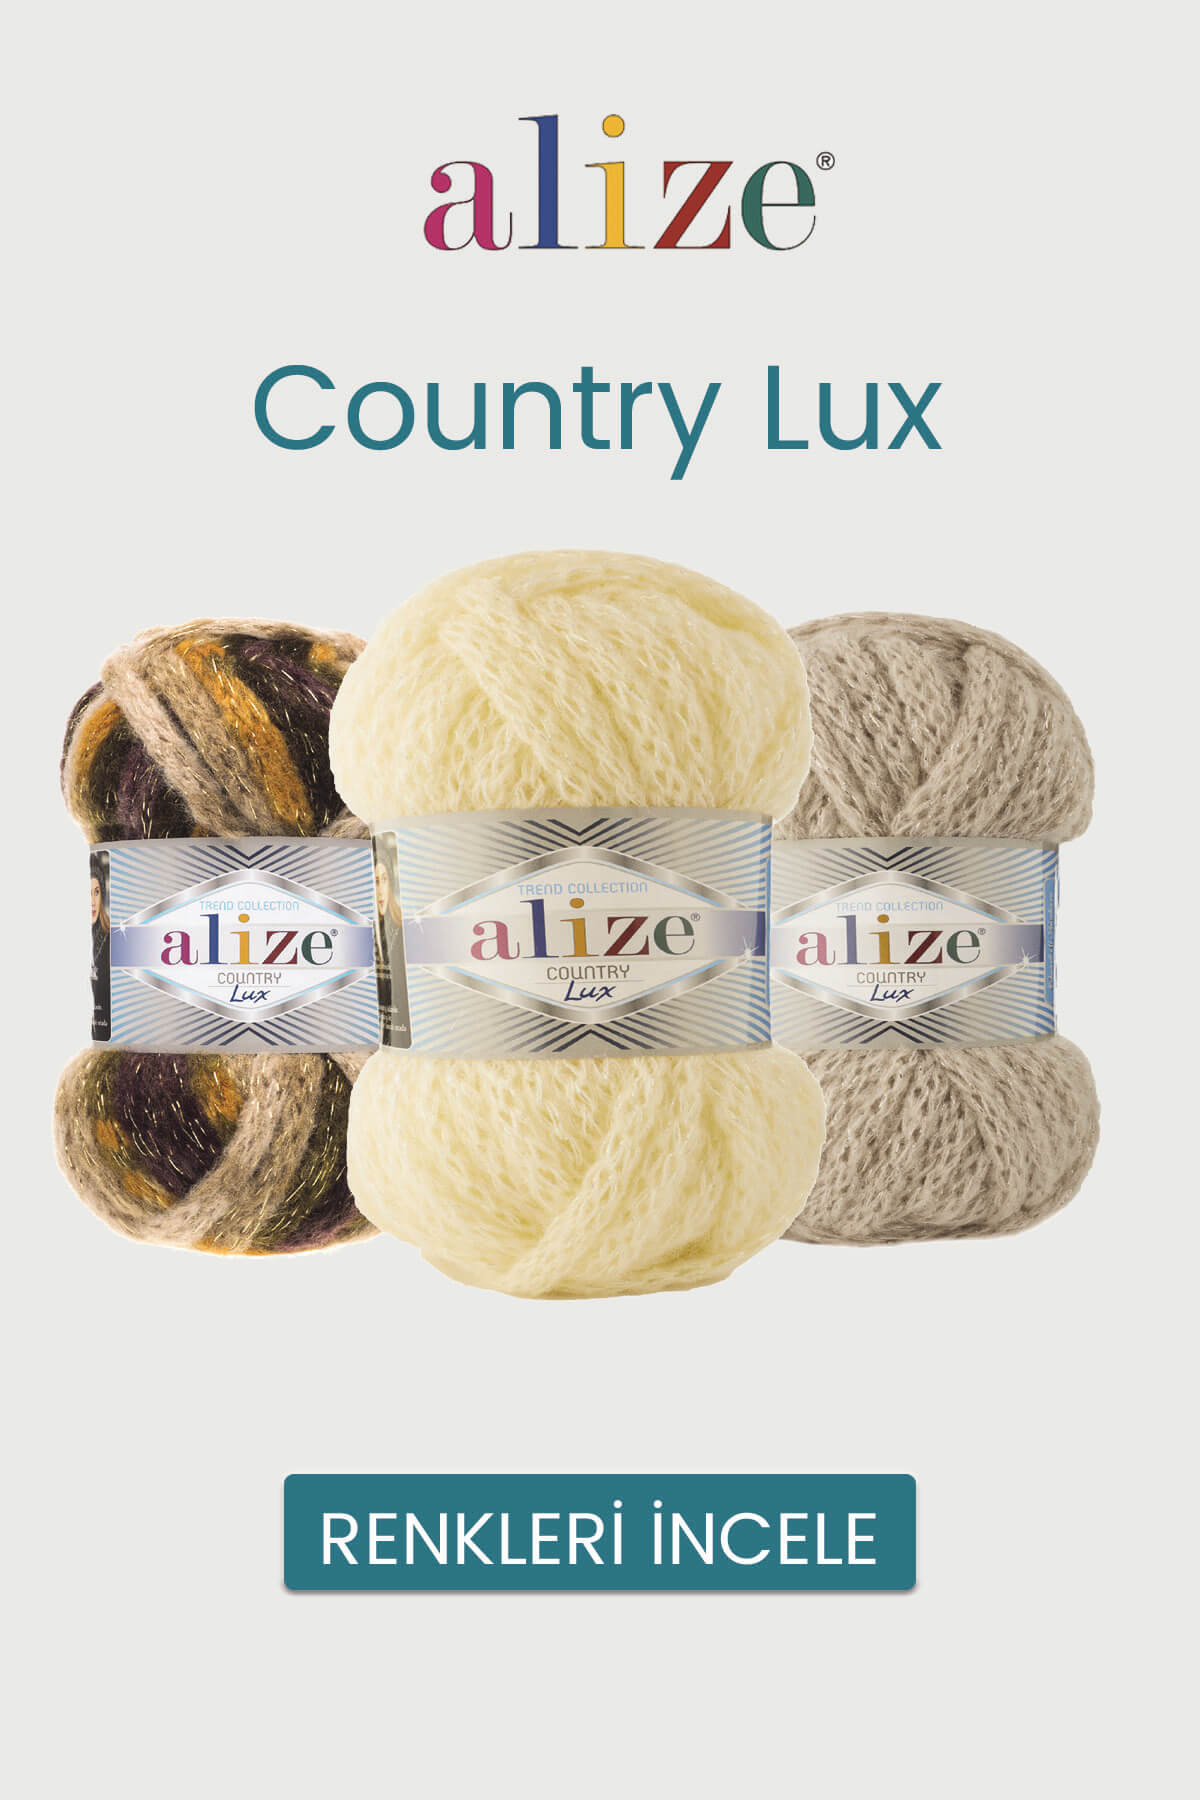 alize-country-lux-tekstilland